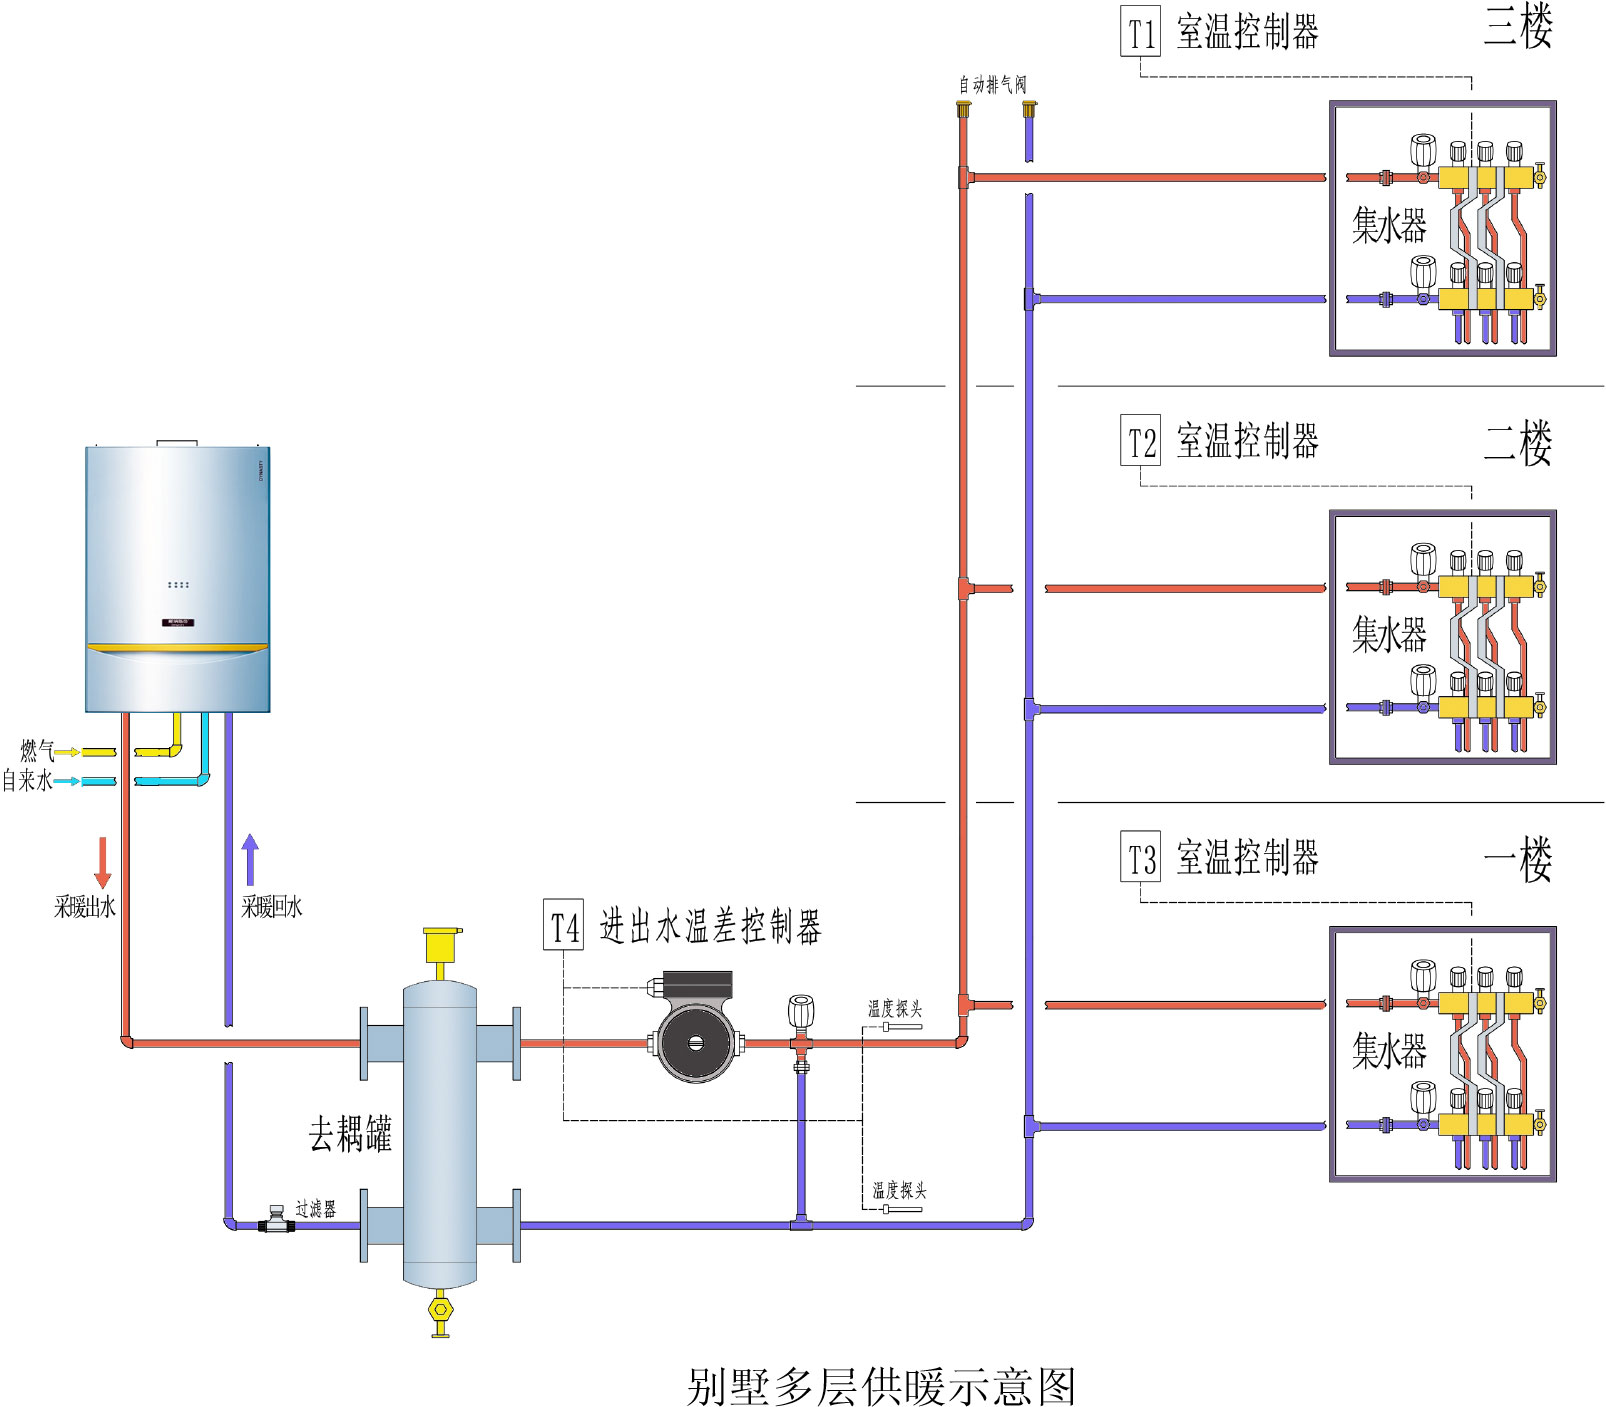 熱水供熱系統回水溫度調節法